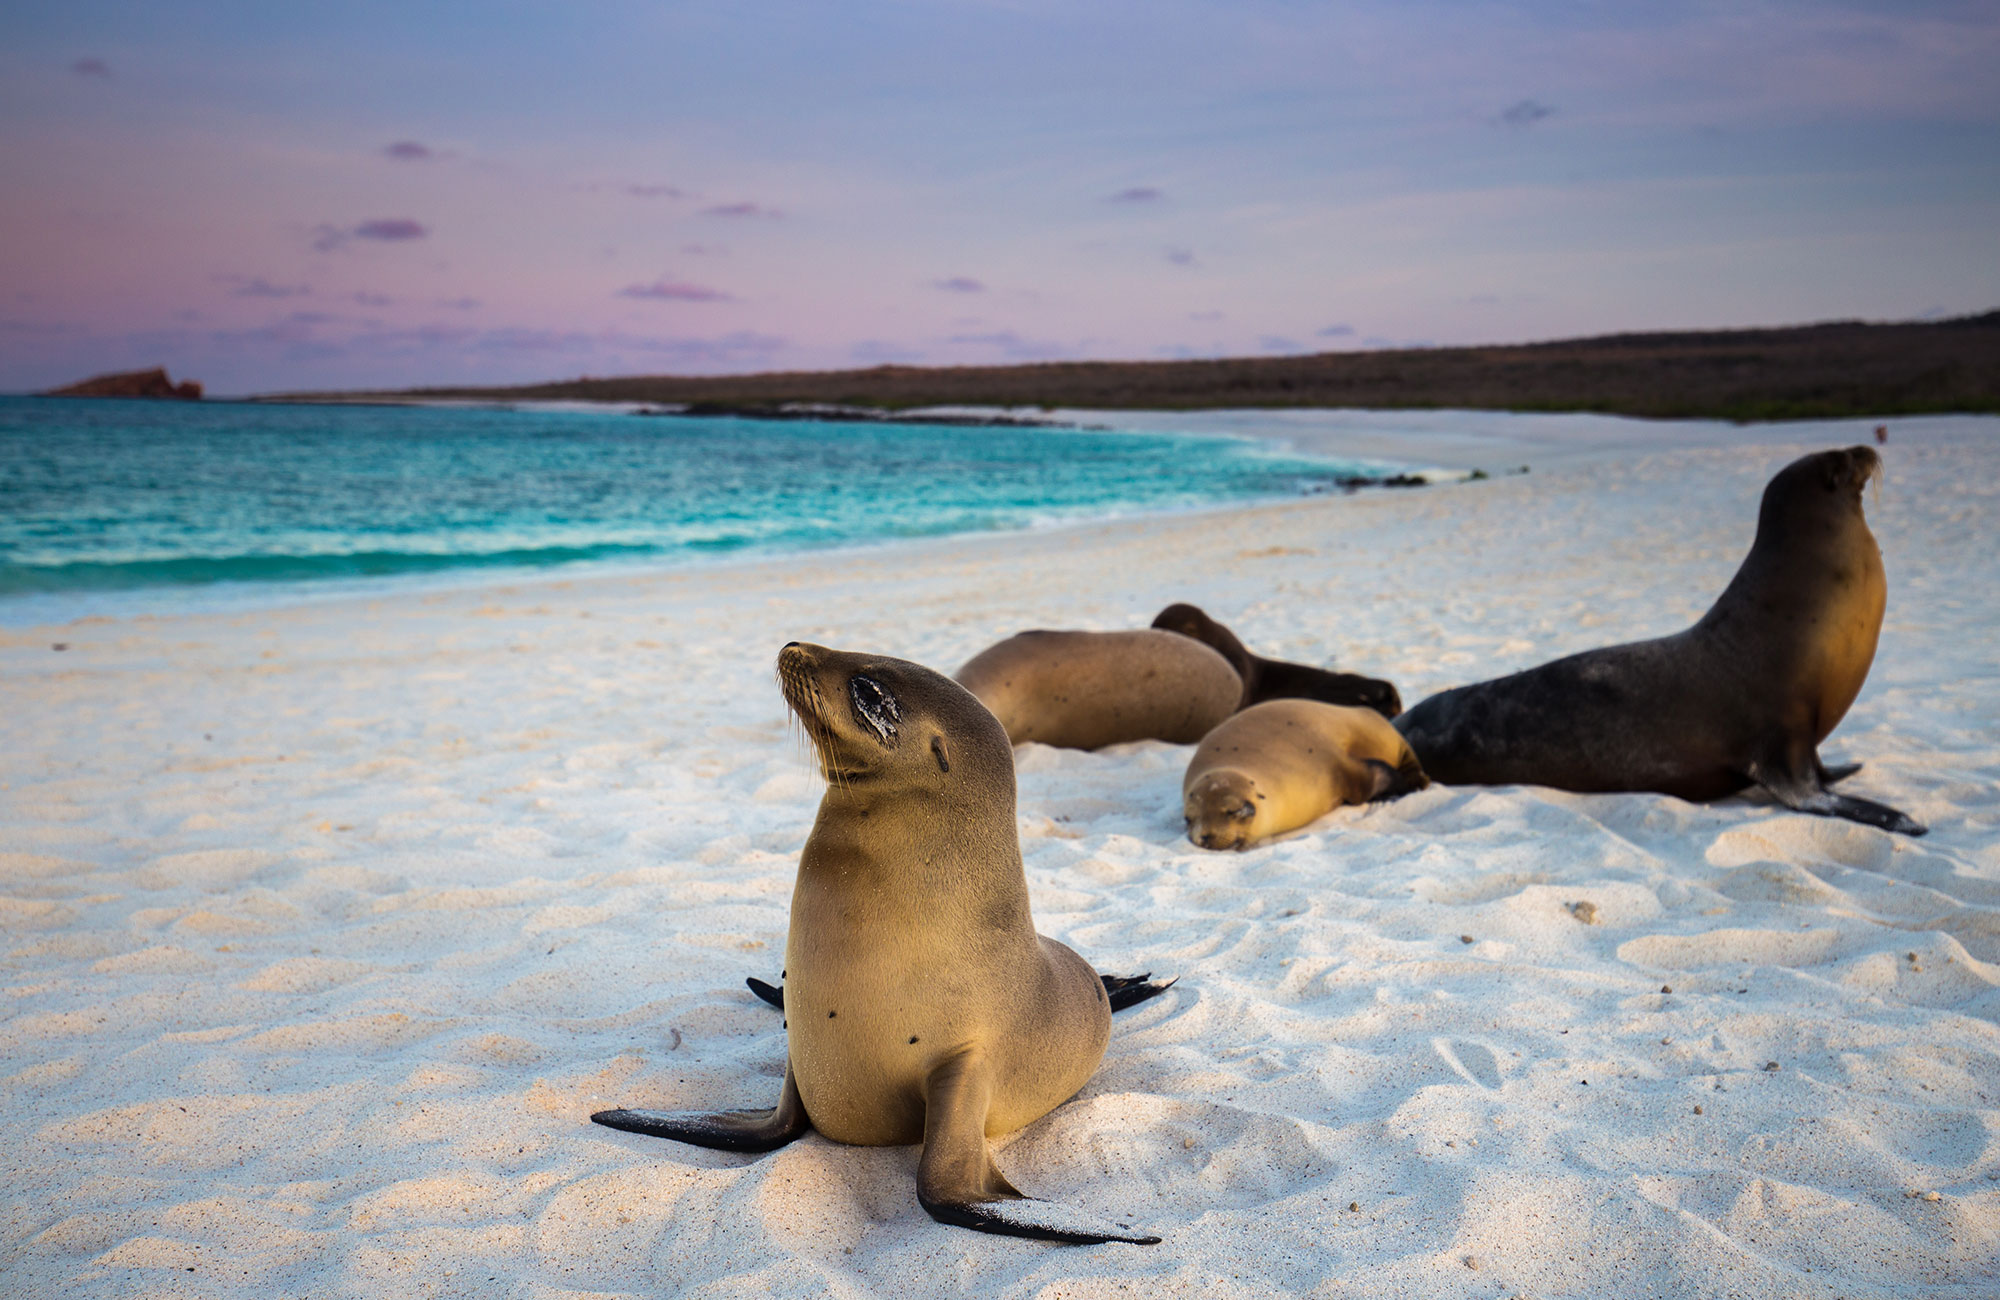 Etelä-Amerikan parhaimmisto - Galapagossaaret - KILROY